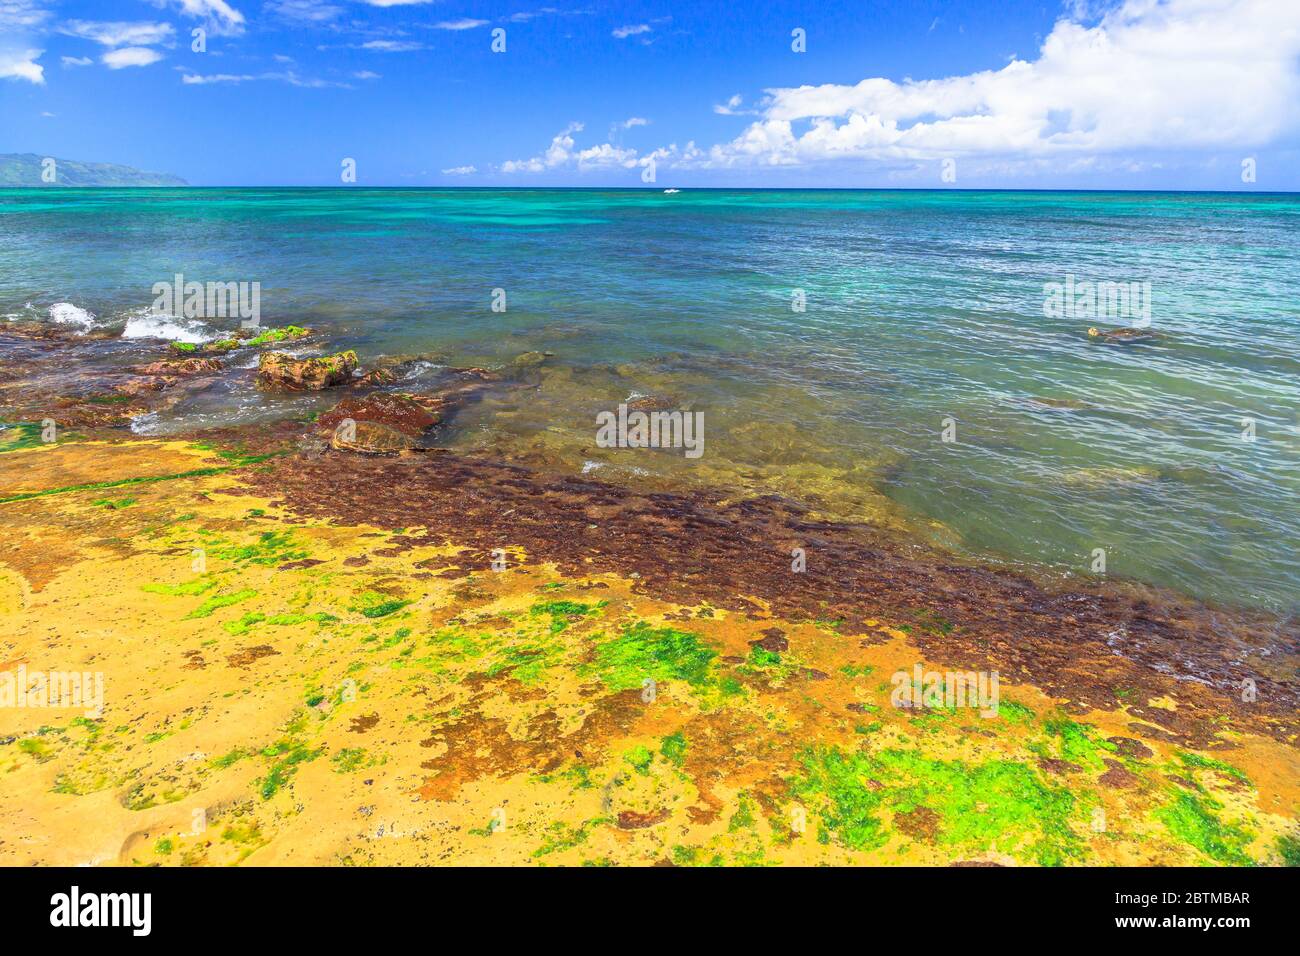 Paisaje Hawaiano Hawaii Turtle Beach En La Isla De Oahu Estados